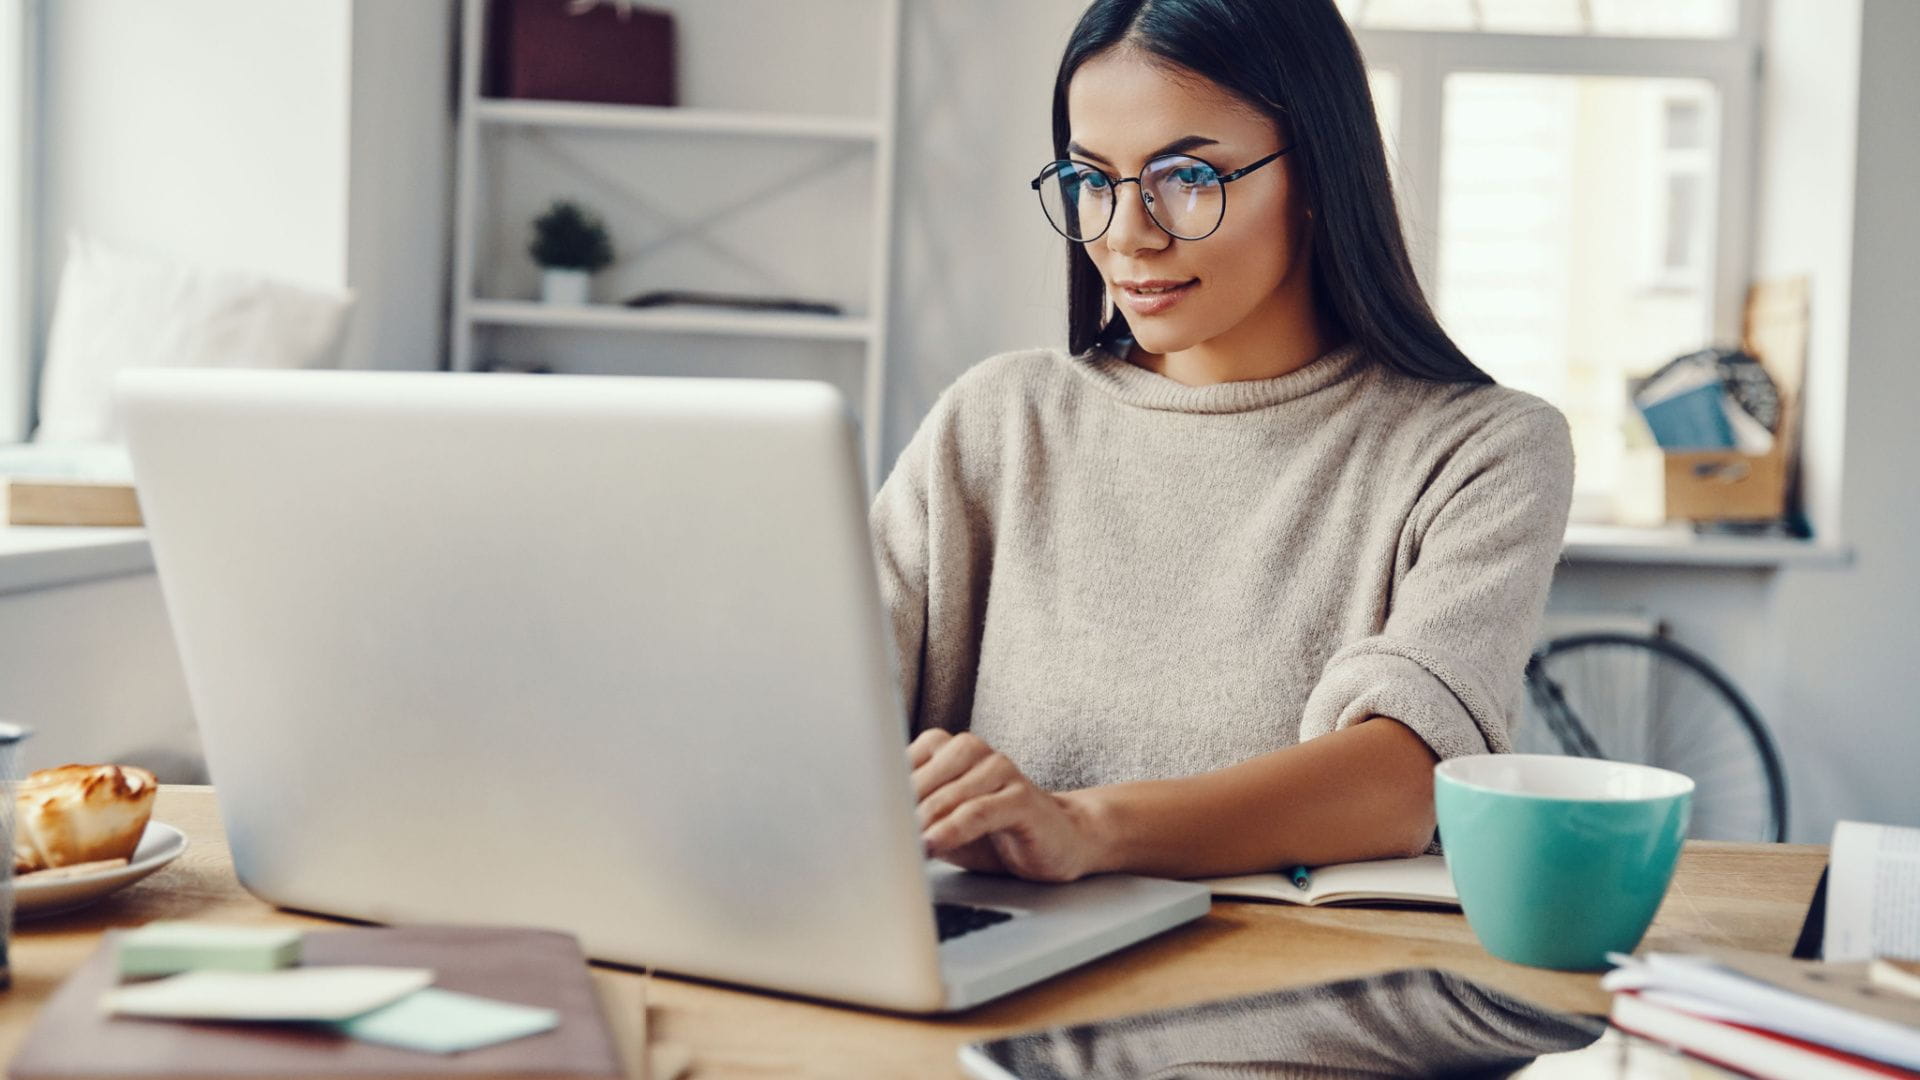 Should you start an online side hustle?